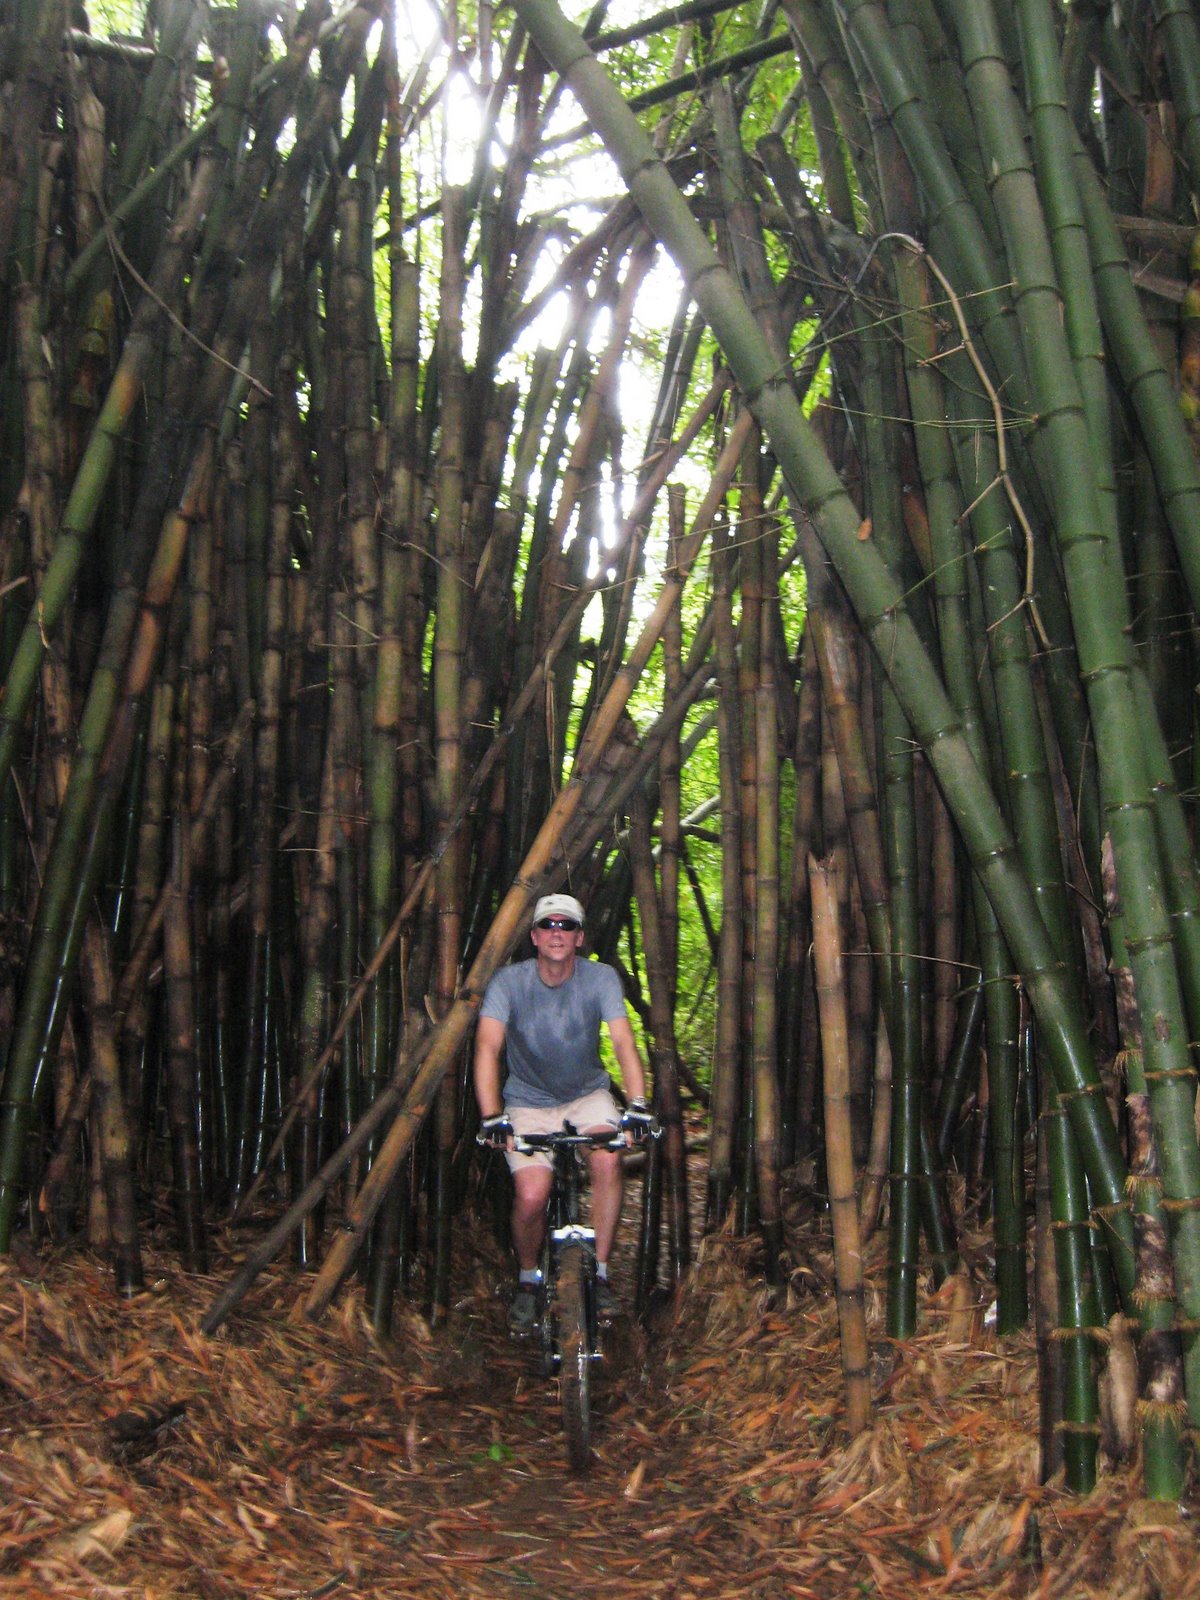 [IMG_2607_IITA_bob_biking_bamboo.JPG]